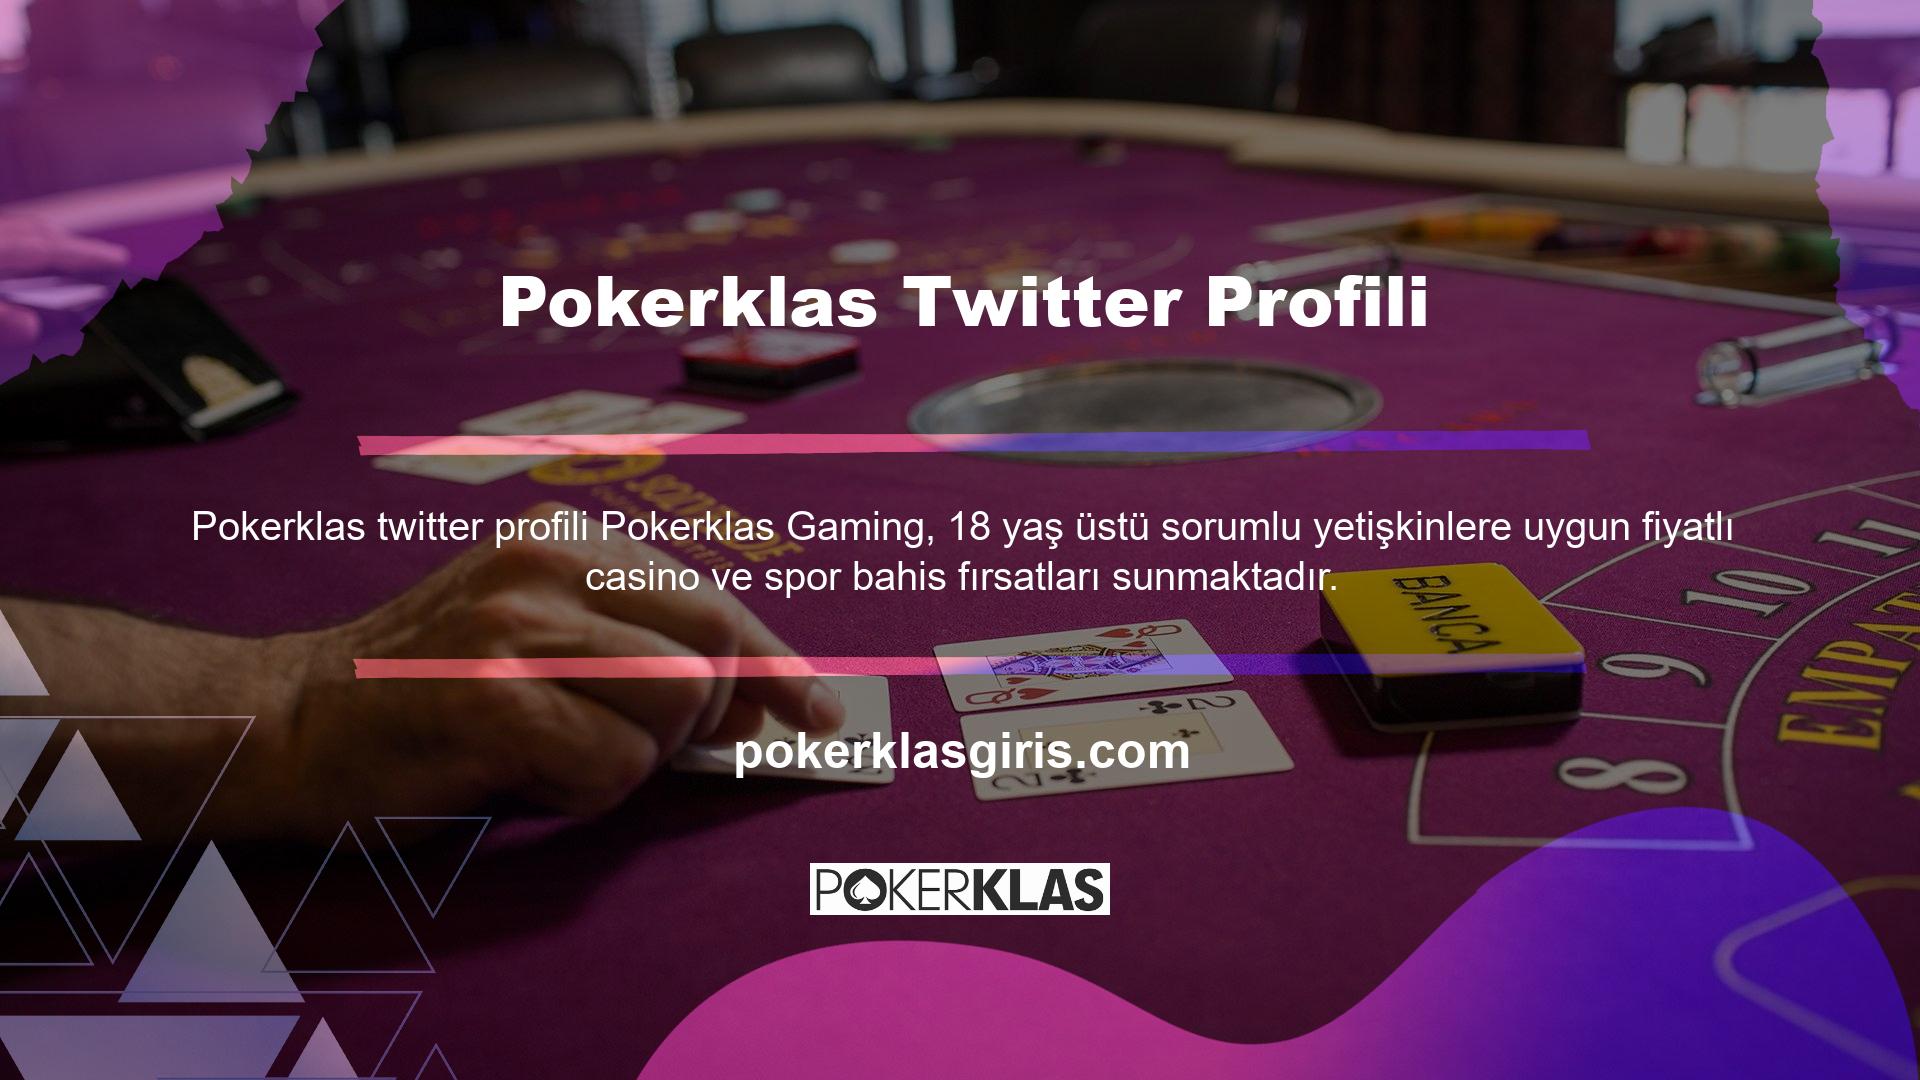 Standart Avrupa içeriği ve hizmetlerini satın almak için hayranların Pokerklas oyun web sitesindeki giriş adreslerini üyelik ayrıntılarıyla birlikte sağlamaları gerekmektedir